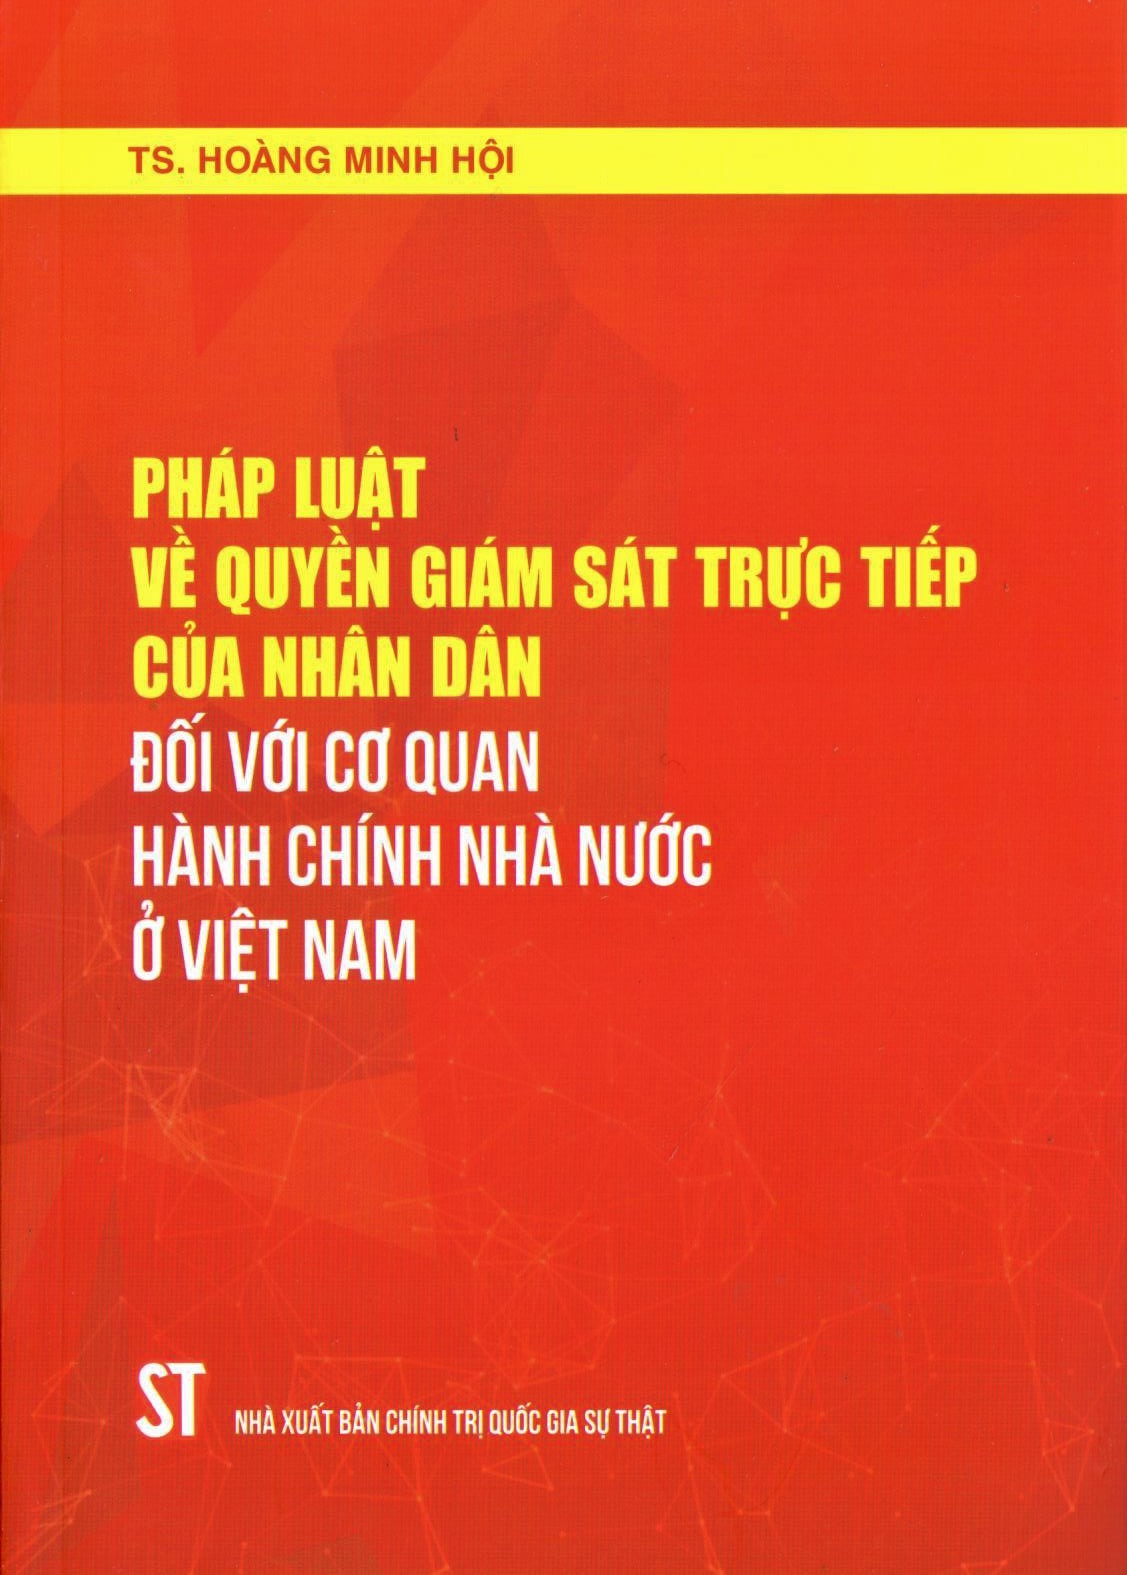 Pháp luật về quyền giám sát trực tiếp của nhân dân đối với cơ quan hành chính nhà nước ở Việt Nam (Xuất bản lần thứ hai, có sửa chữa, bổ sung)